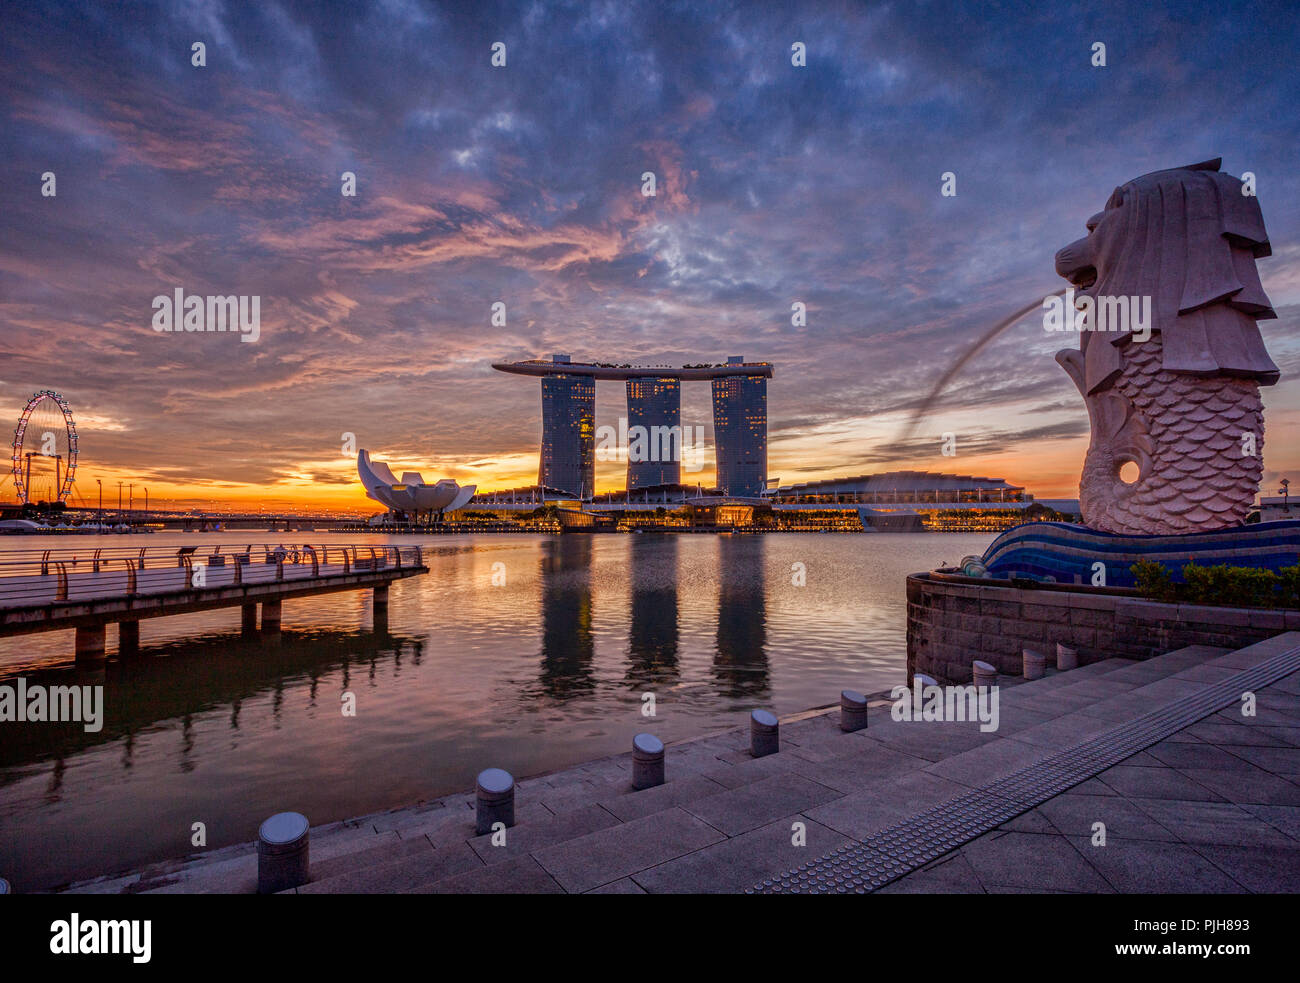 Skyline von Singapur bei Sonnenaufgang, mit der Merlion, das Marina Bay Sands, der Kunst und Wissenschaft Museum und der Singapore Flyer, alle unter einem dramatischen Himmel. Stockfoto